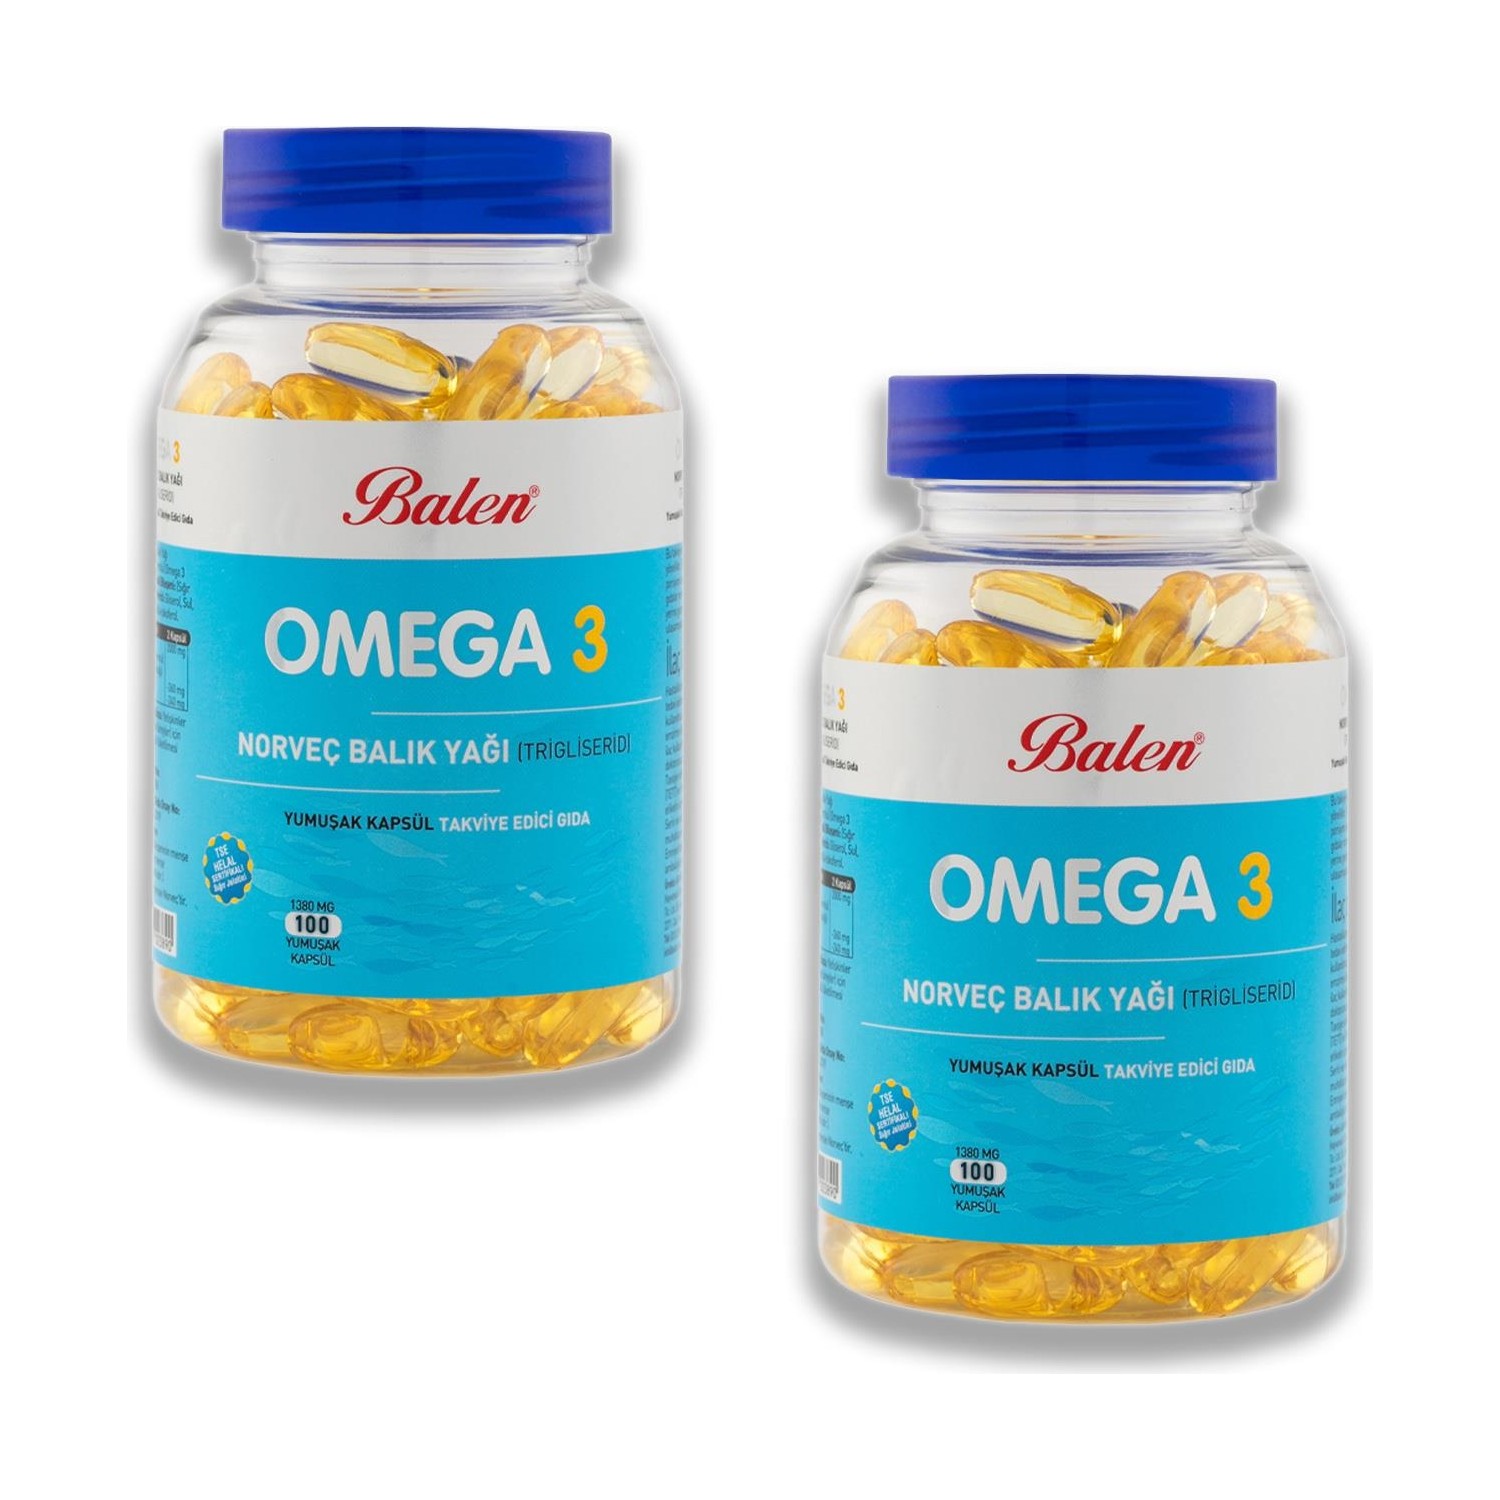 Норвежский рыбий жир Balen Omega-3 (триглицерид) 1380 мг, 2 упаковки по 100 капсул now tri 3d omega 90 капсул 1562 мг